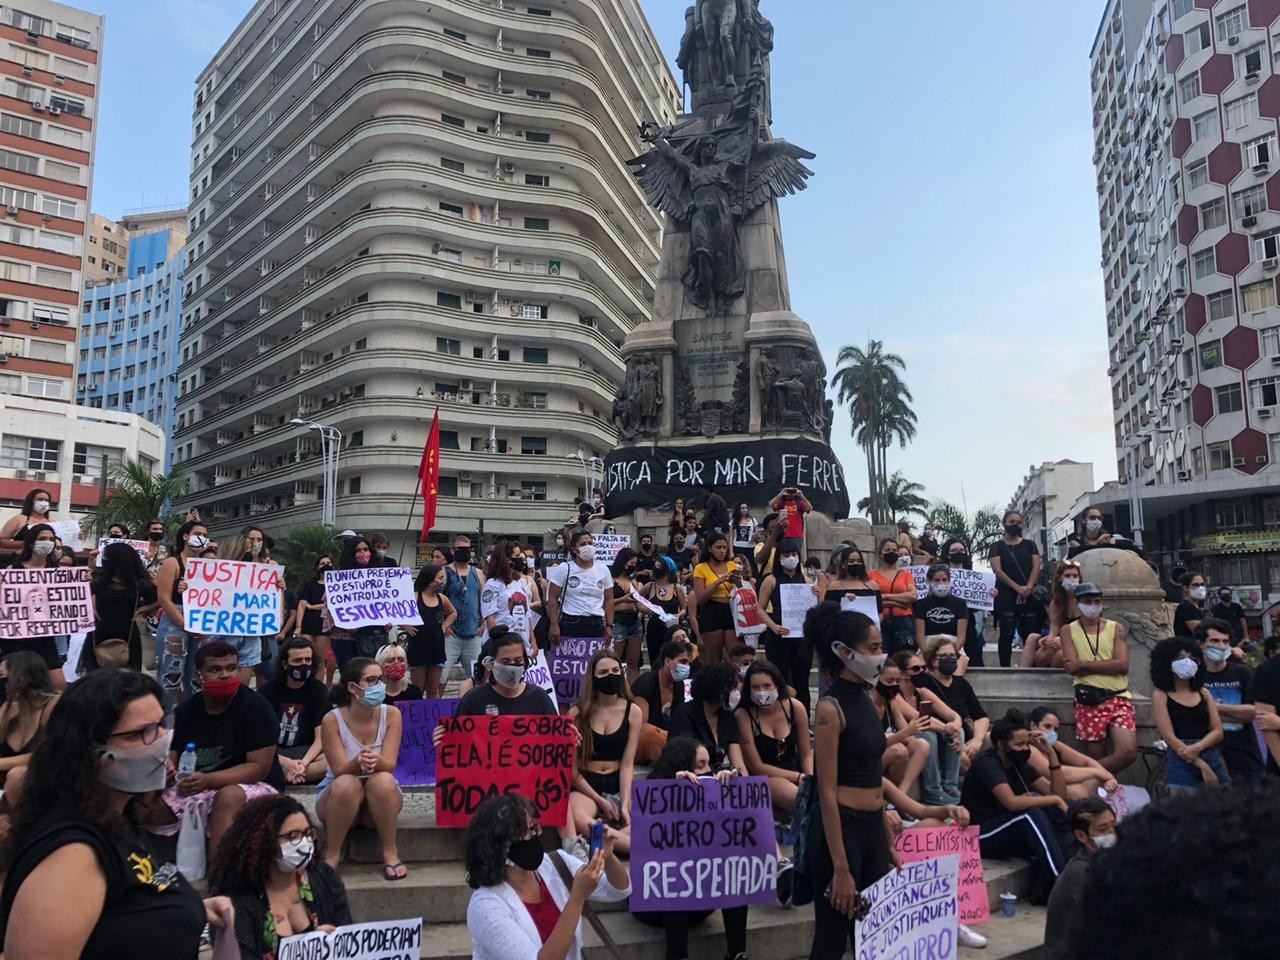 Mulheres protestam em Santos, SP, pedindo justiça por Mari Ferrer 